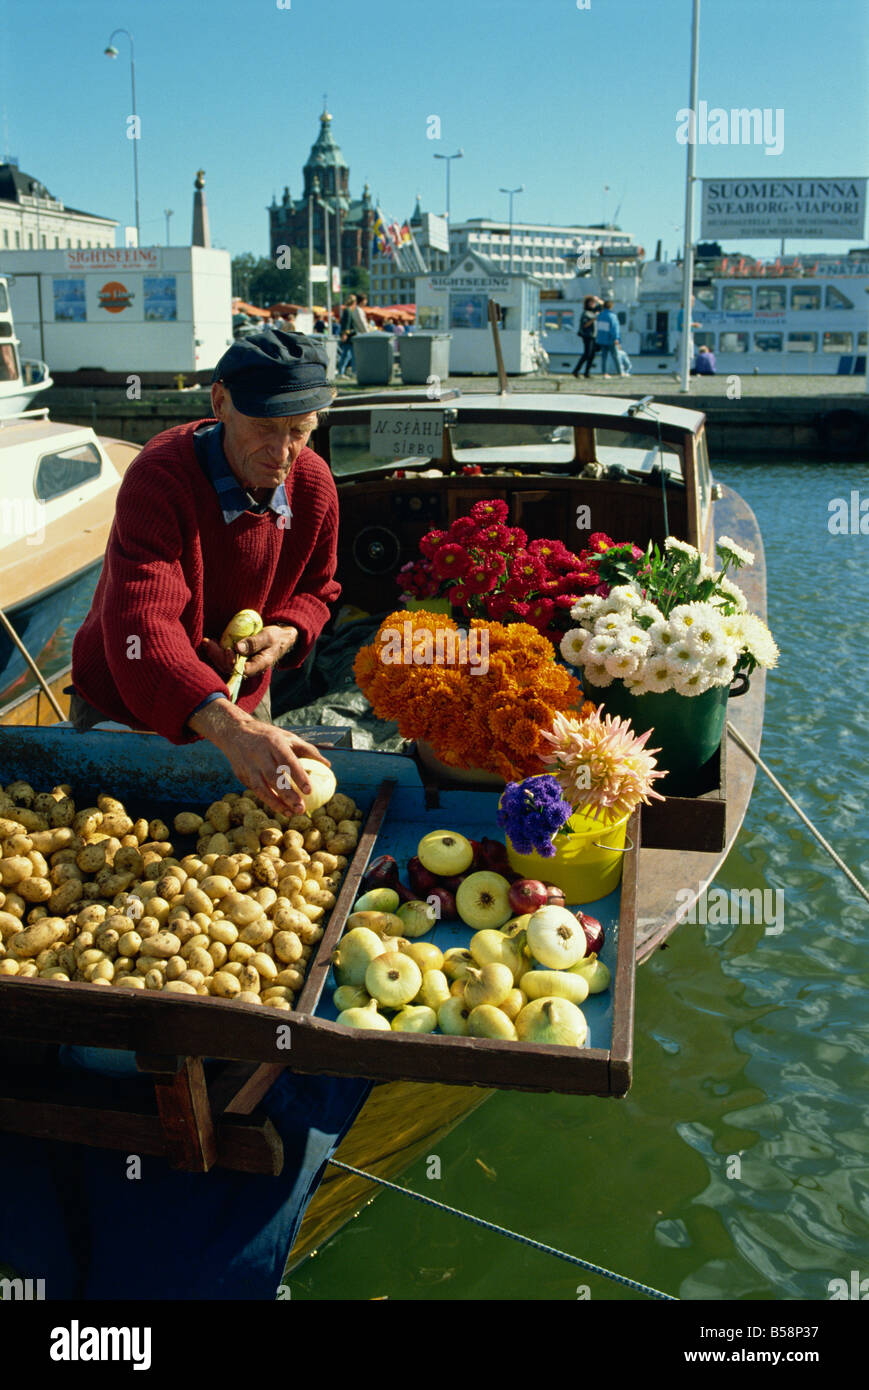 Fiori, patate e cipolle in vendita sul lungomare del porto di Helsinki, Finlandia e Scandinavia, Europa Foto Stock